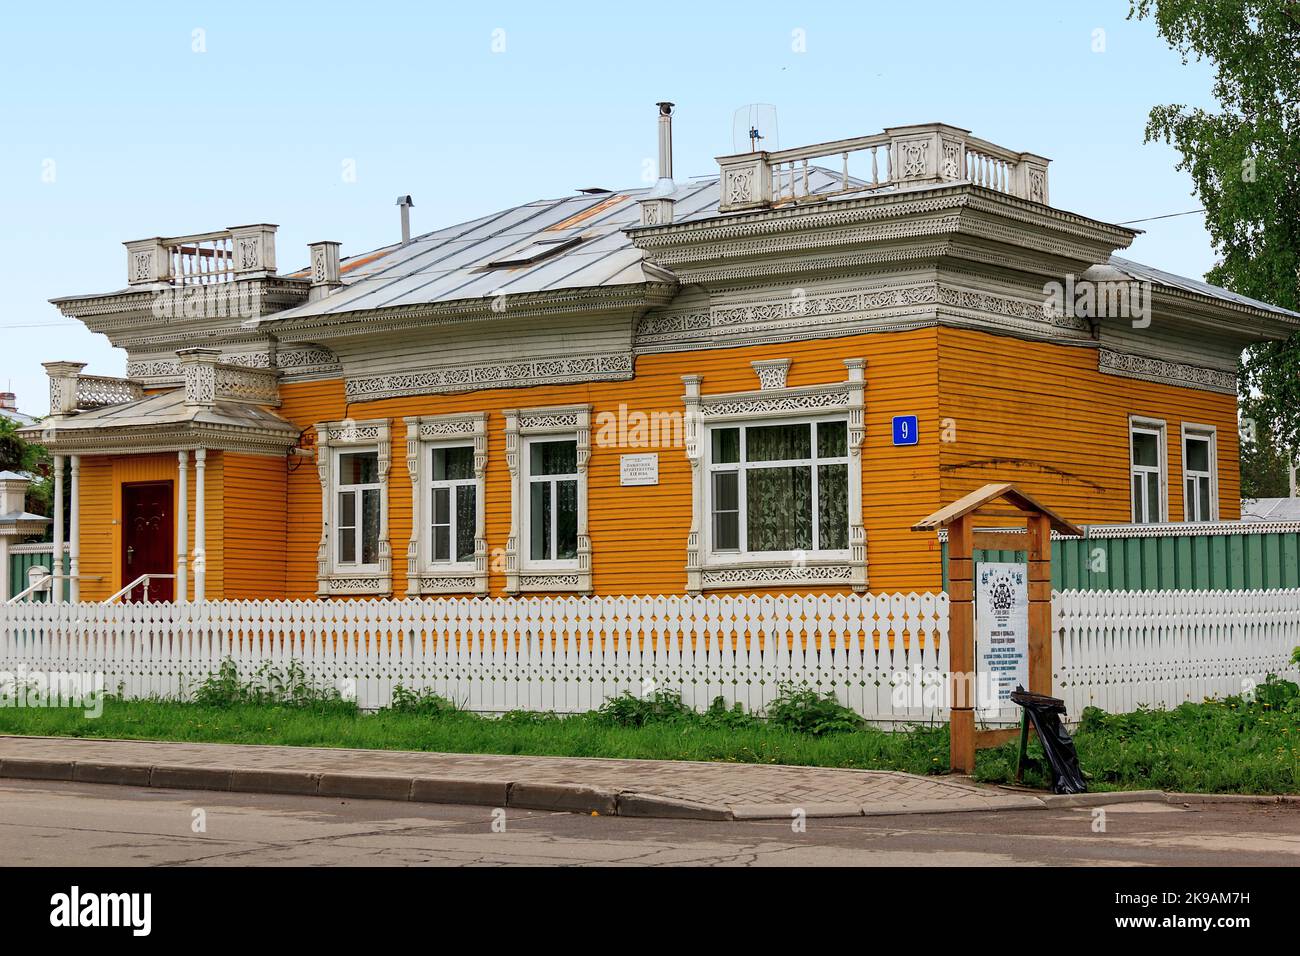 Dieses Wohnhaus ist ein Denkmal der Holzarchitektur des 19.. Jahrhunderts des russischen Nordens 24. Mai 2013 in Wologda, Russland. Stockfoto